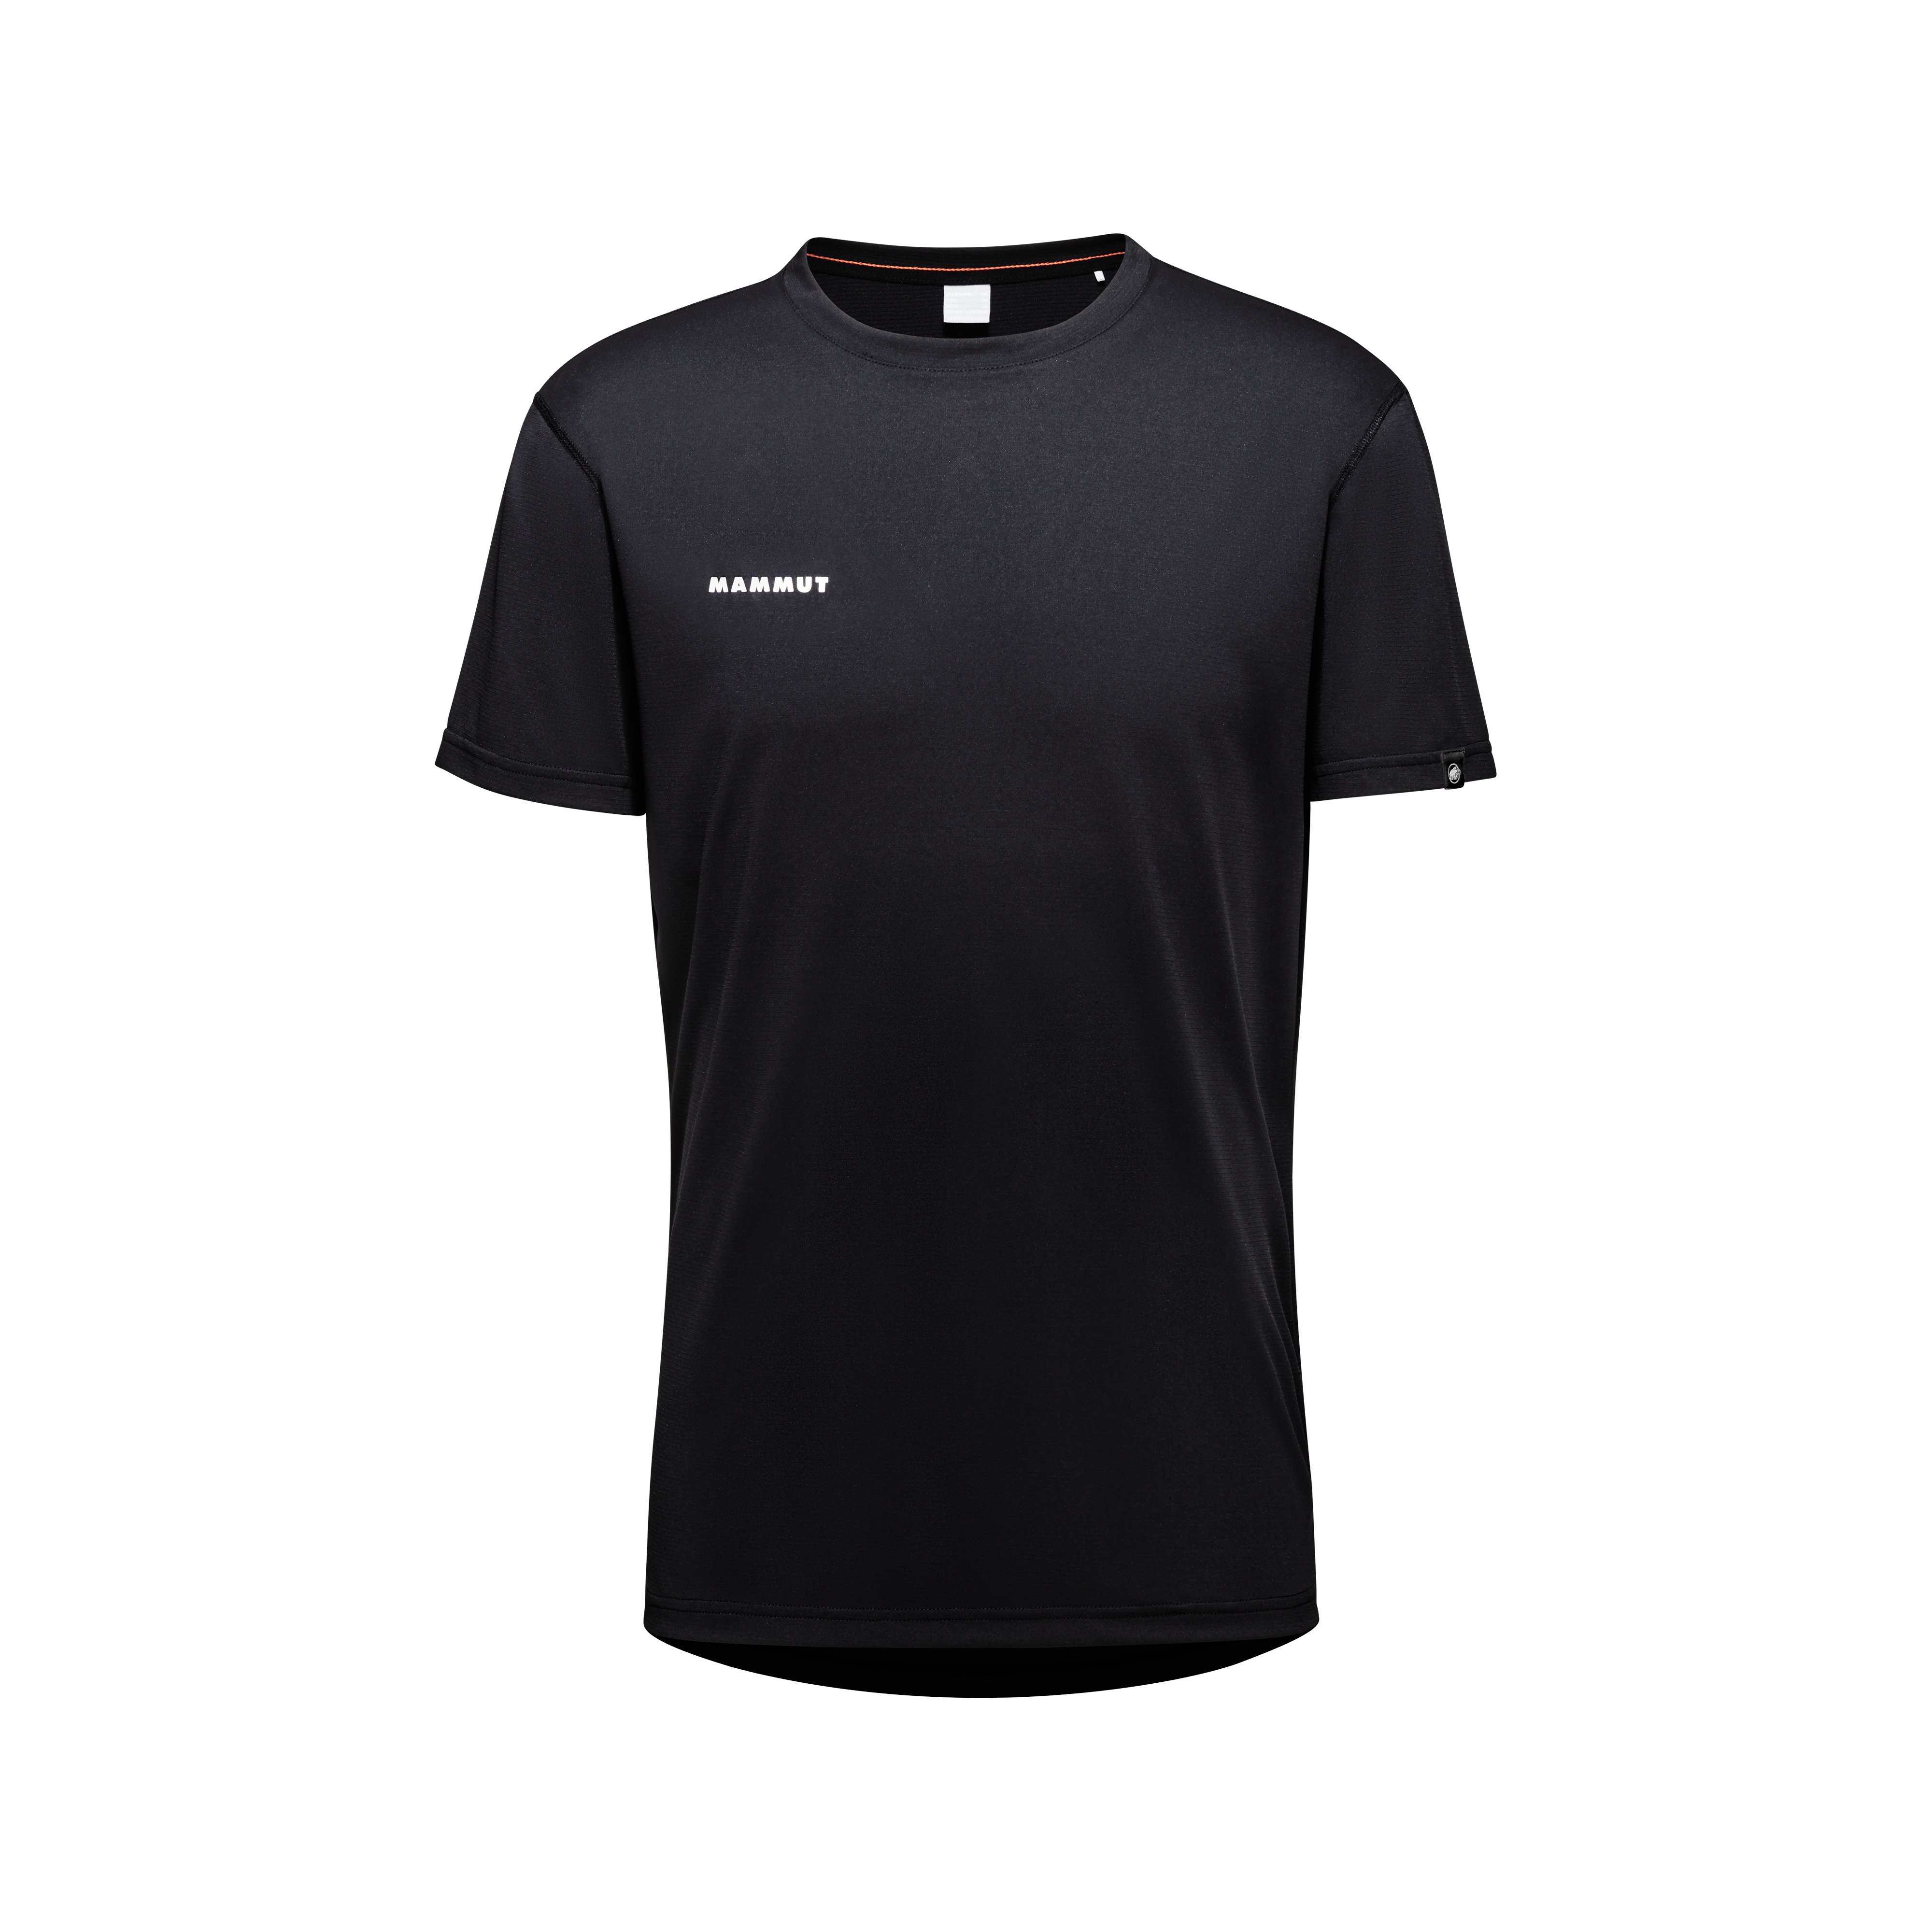 Massone Sport T-Shirt Men - black, S thumbnail